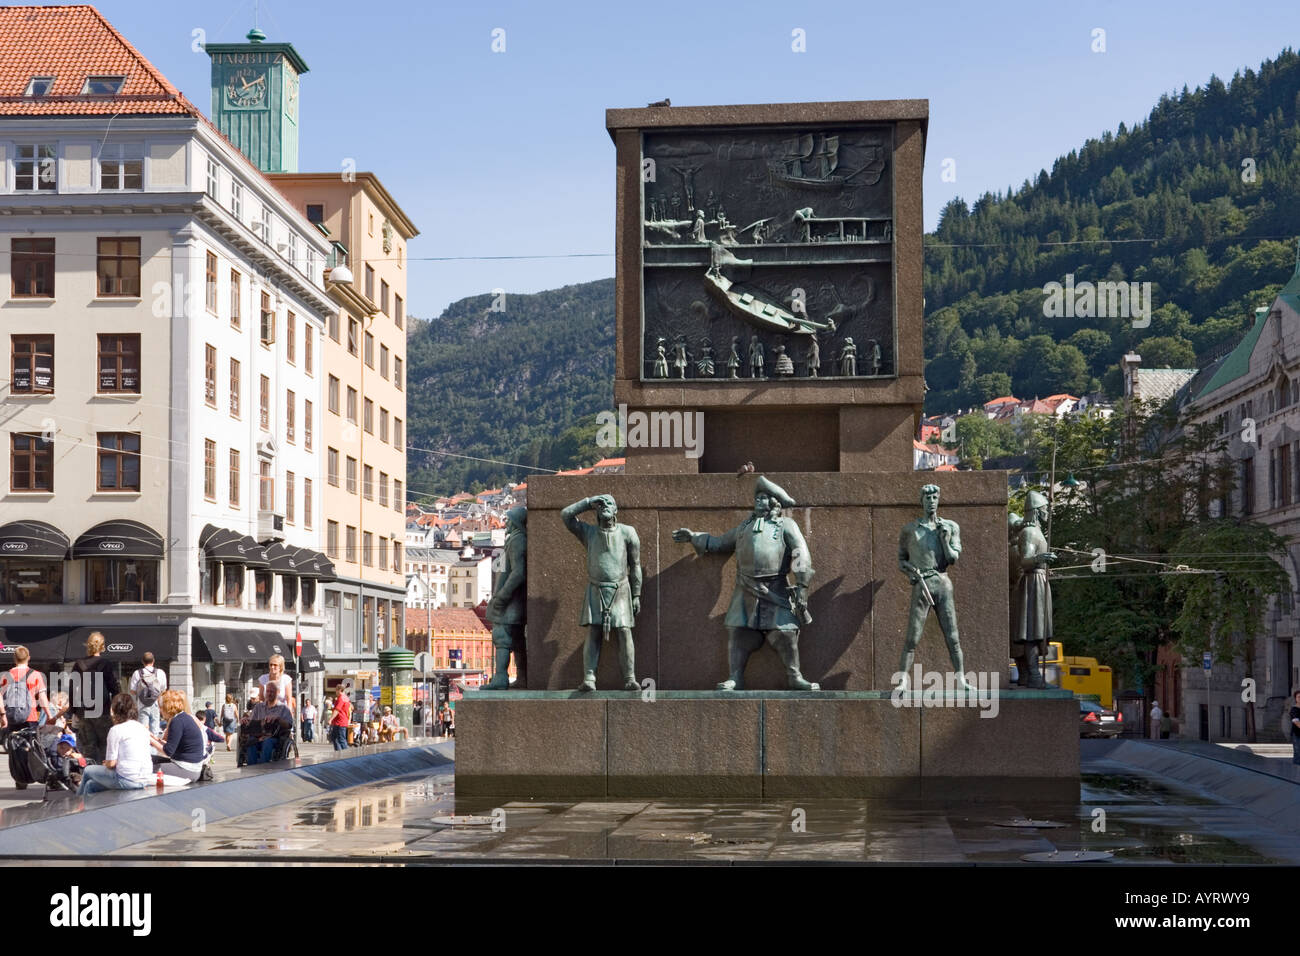 Memorial to fallen sailors in the Torgalmenningen, Bergen, Norway Stock Photo